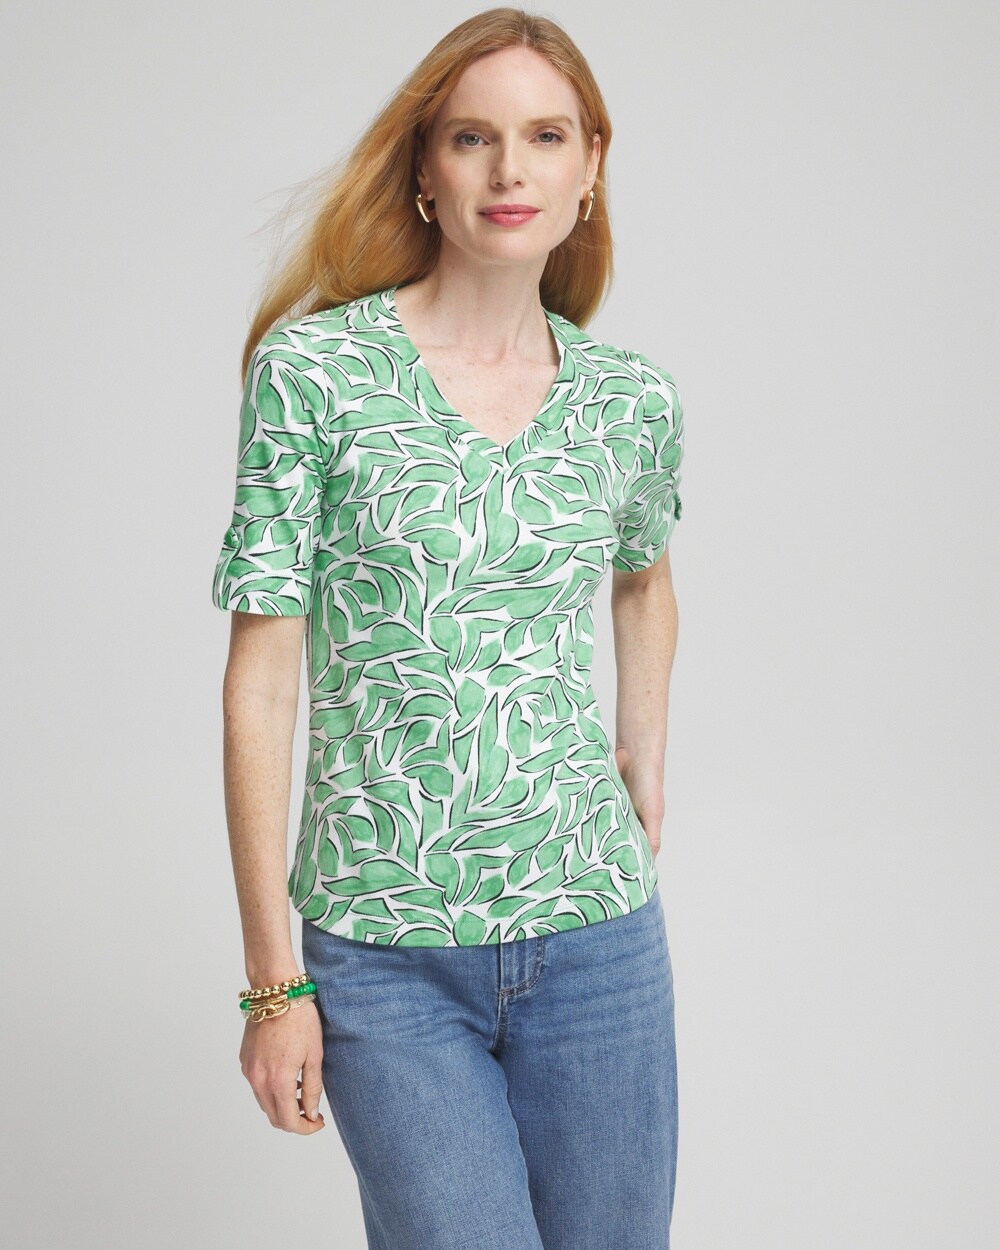 Chico's Modern Everyday V-neck T-shirt In Grassy Green Size Xxl |